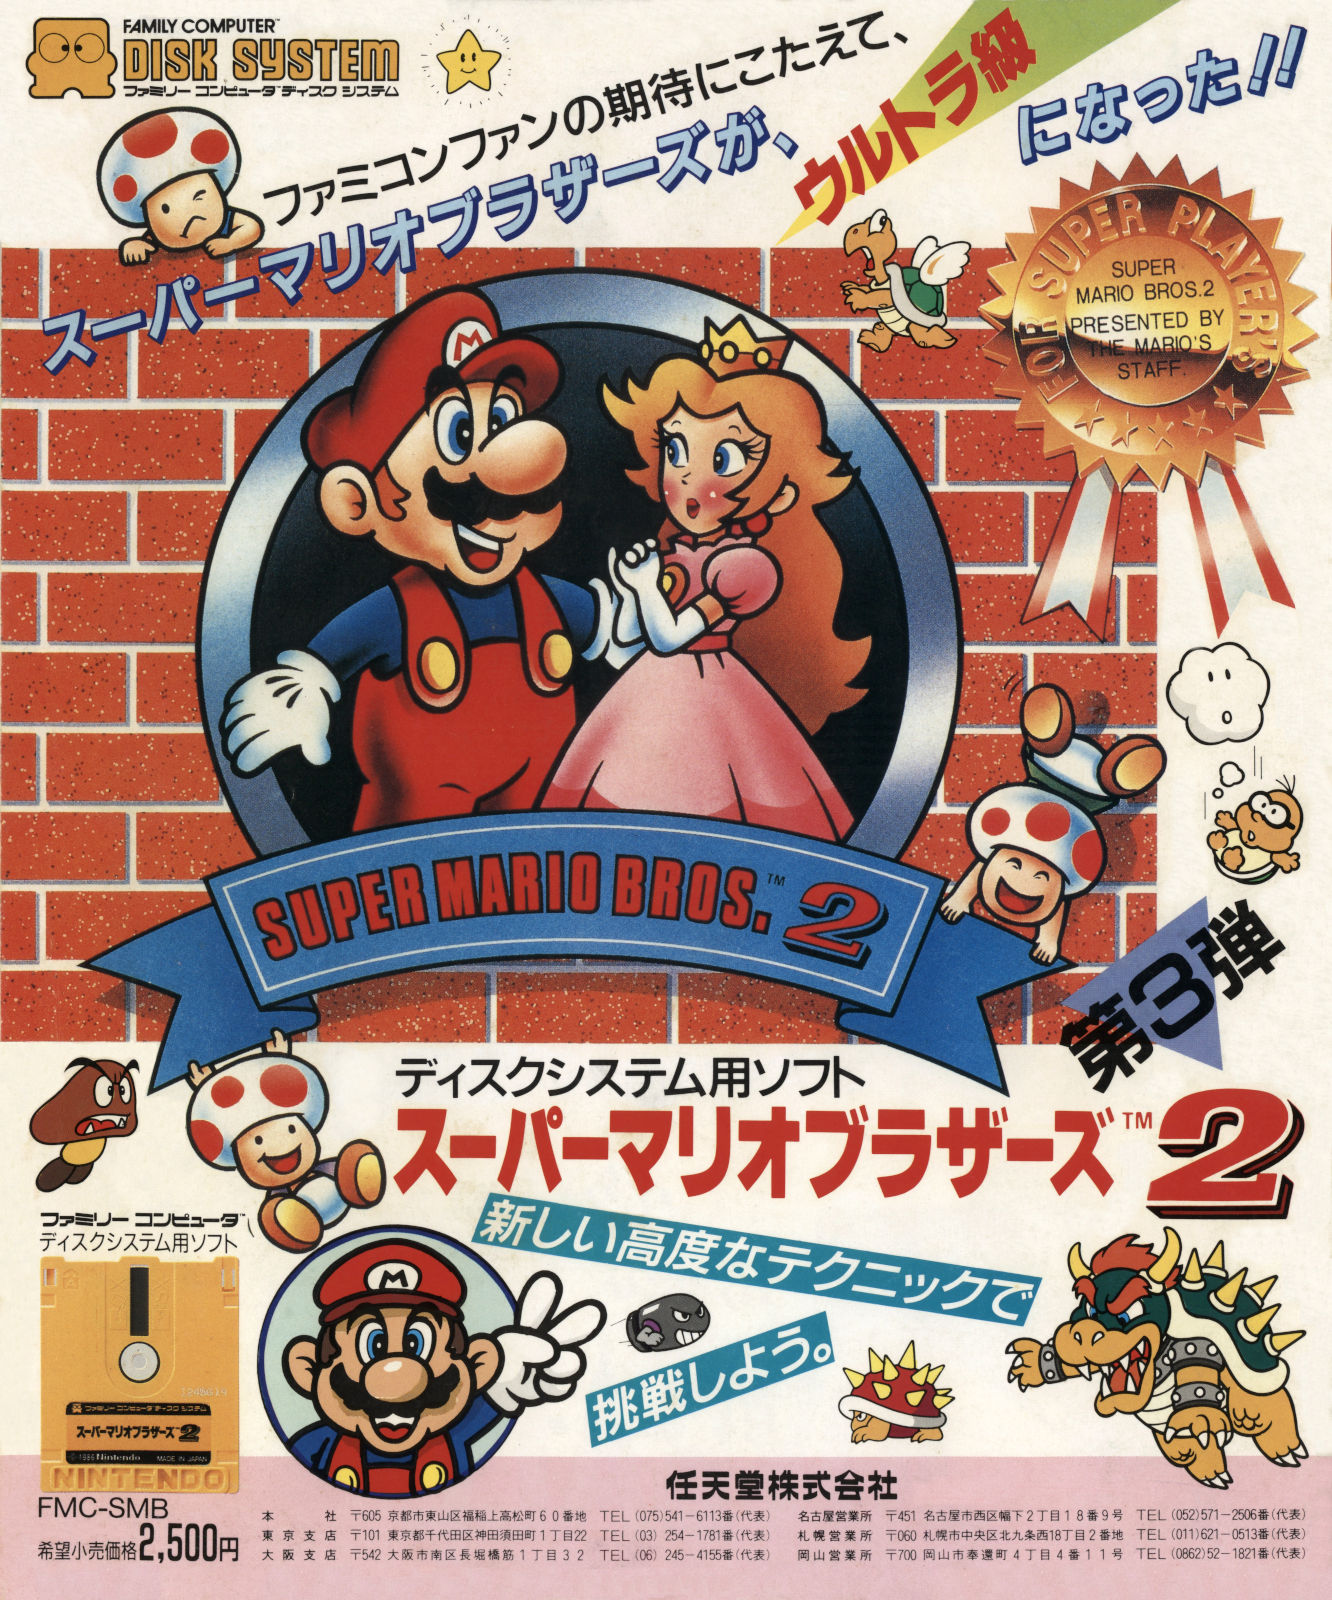 Super Mario Bros. 2・▱𝘉𝘜𝘉𝘉𝘓𝘐𝘚𝘔▱